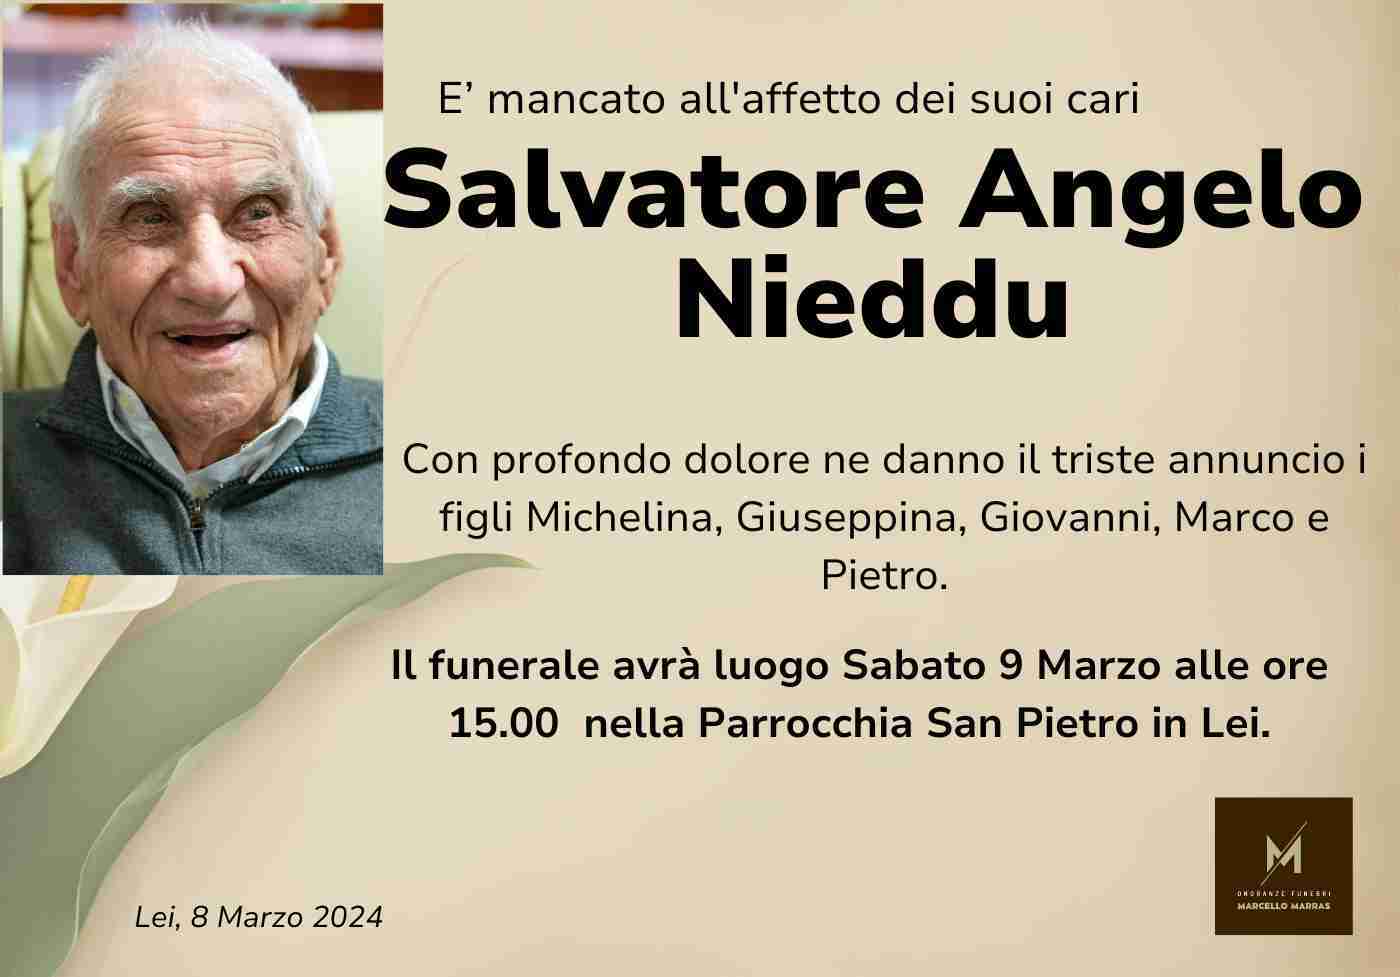 Salvatore Angelo Nieddu